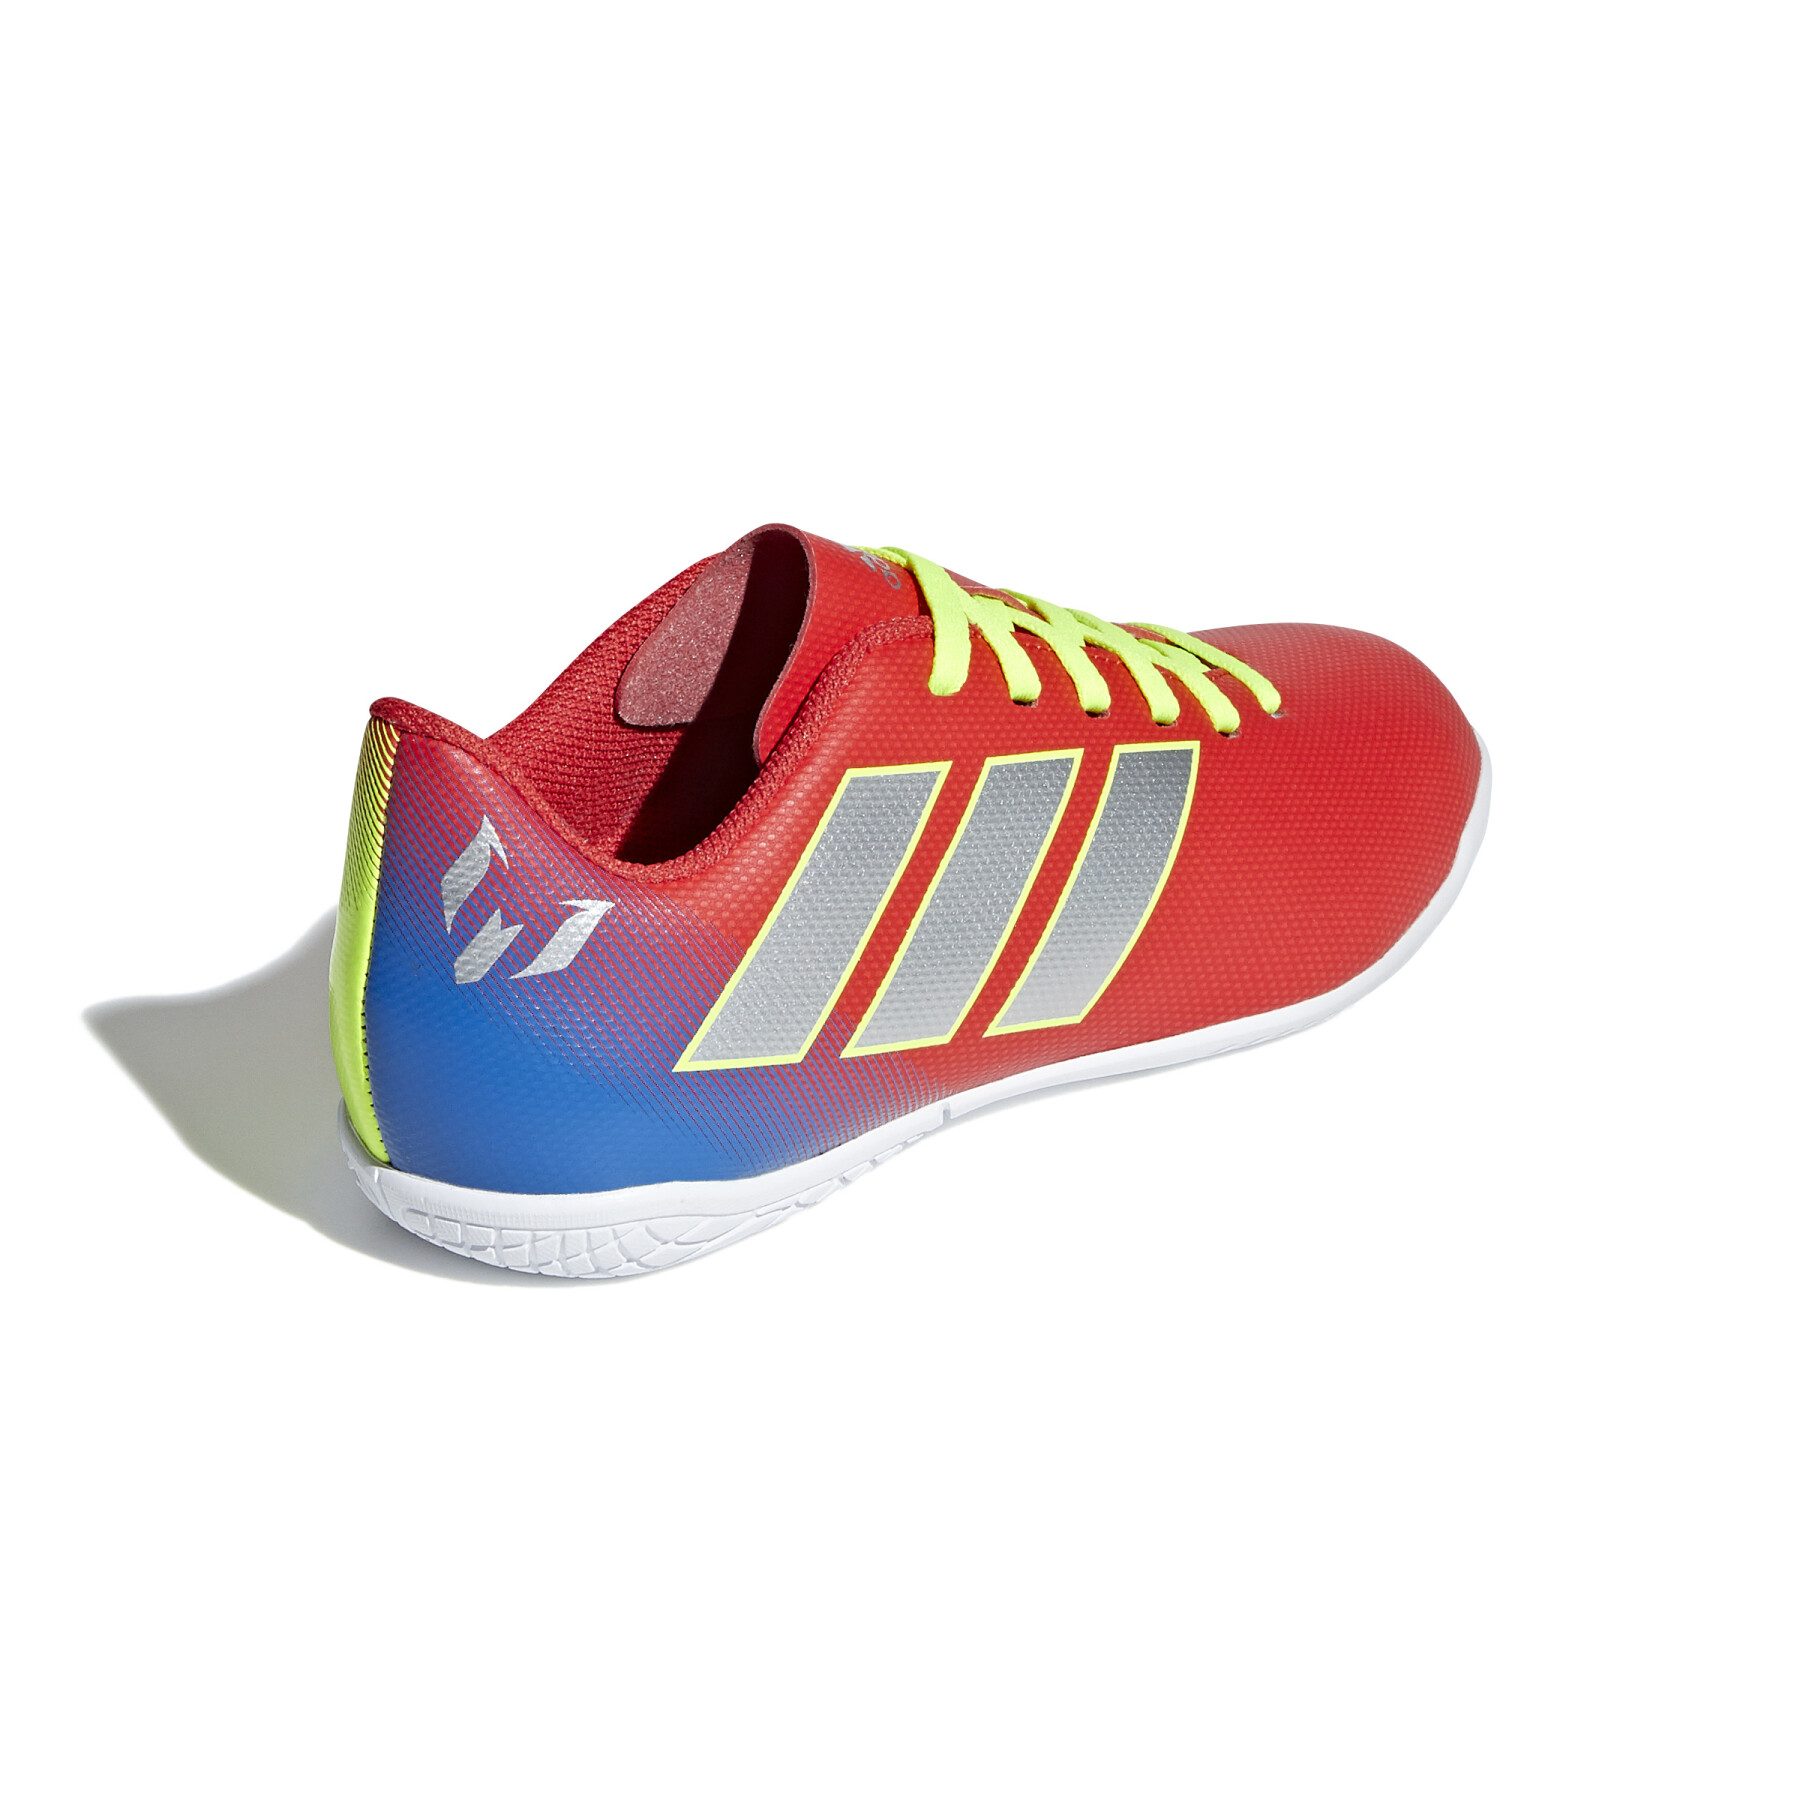 Sapatos de futebol para crianças adidas Nemeziz Messi Tango 18.4 IN